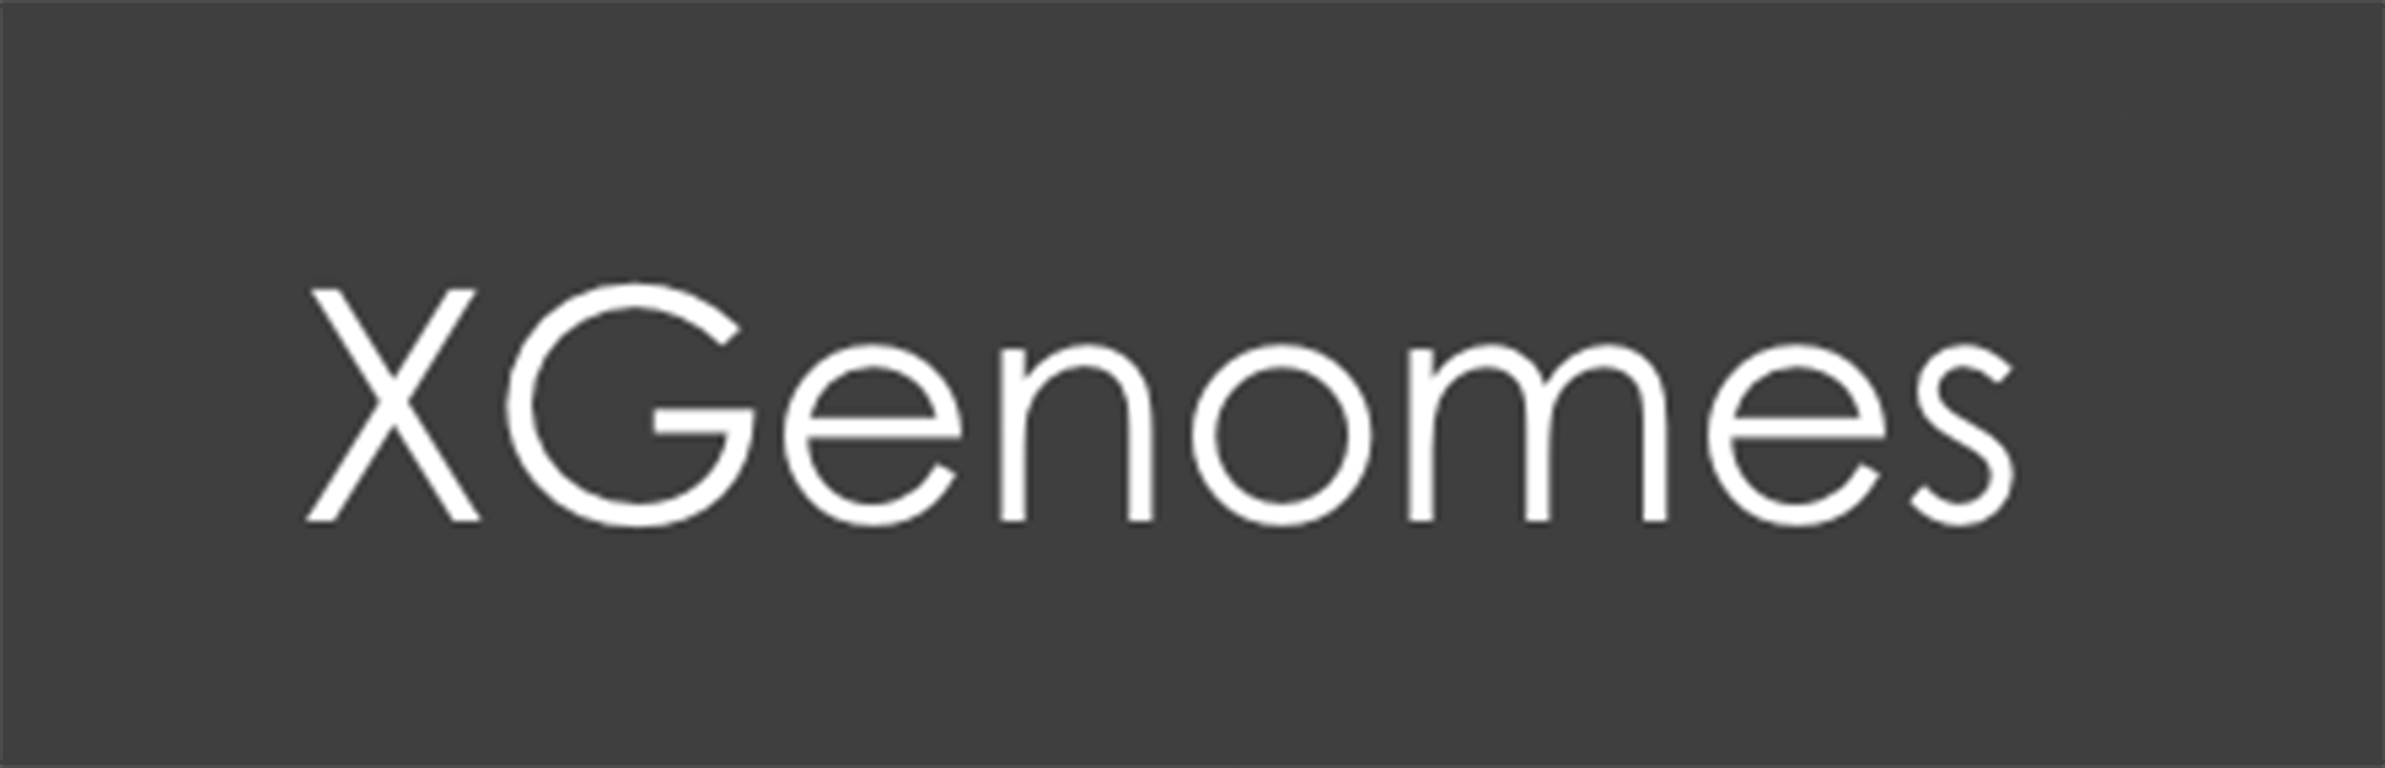 Xgenomes logo